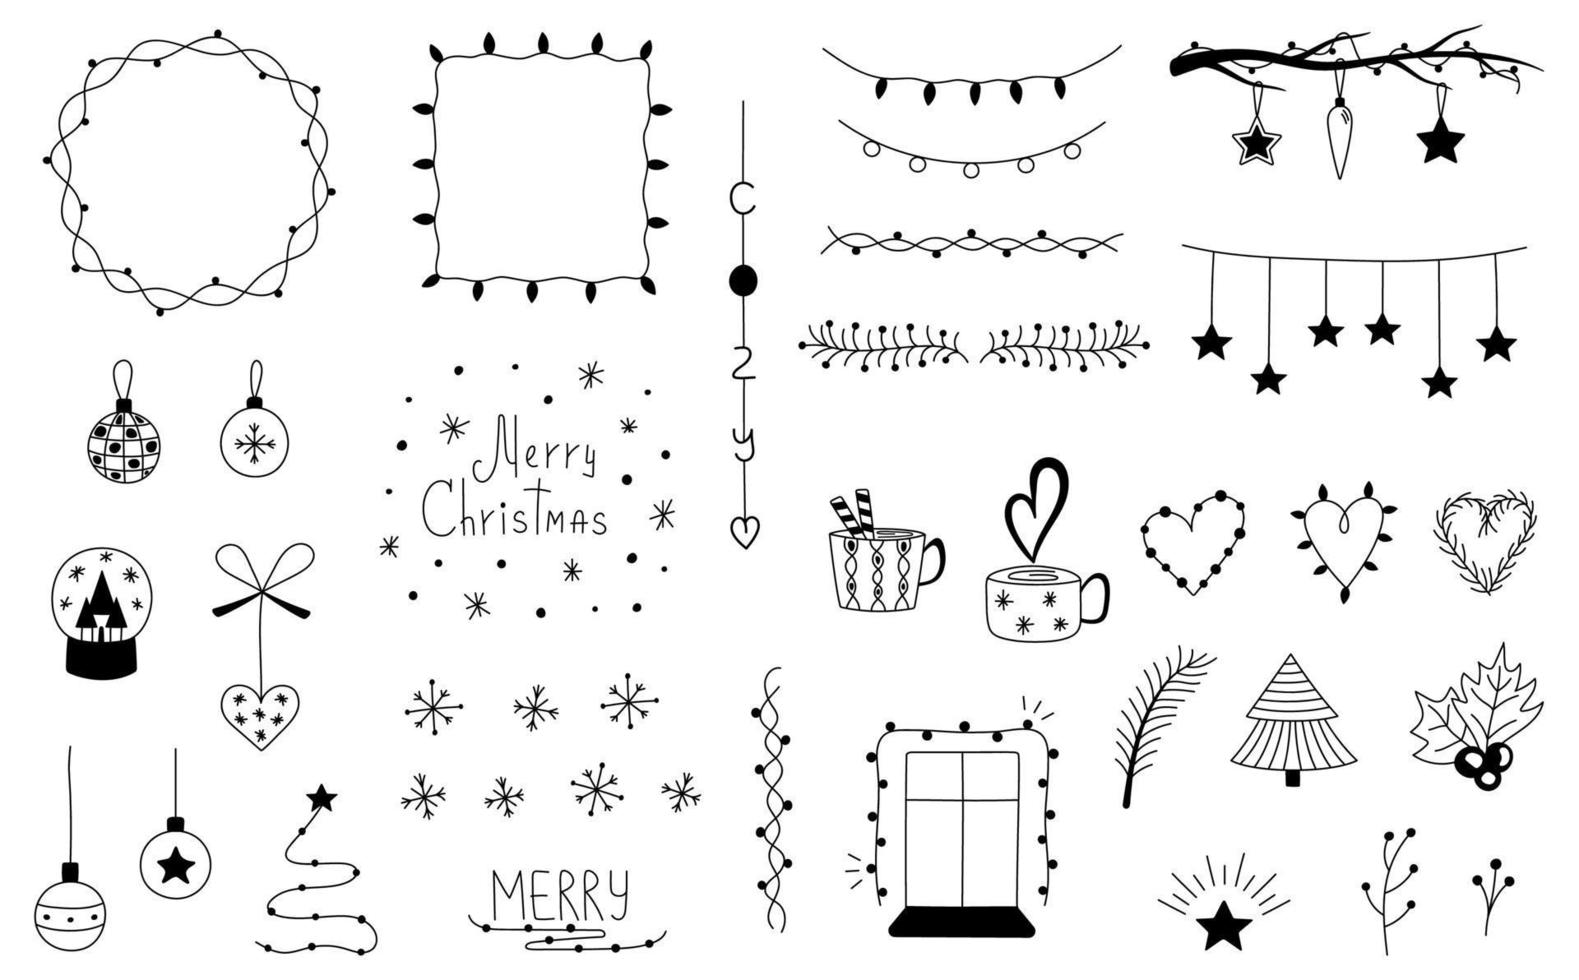 colección de garabatos navideños. conjunto de marcos navideños dibujados a mano, bordes, guirnaldas, adornos navideños, copos de nieve. ilustración vectorial de invierno para la decoración navideña vector